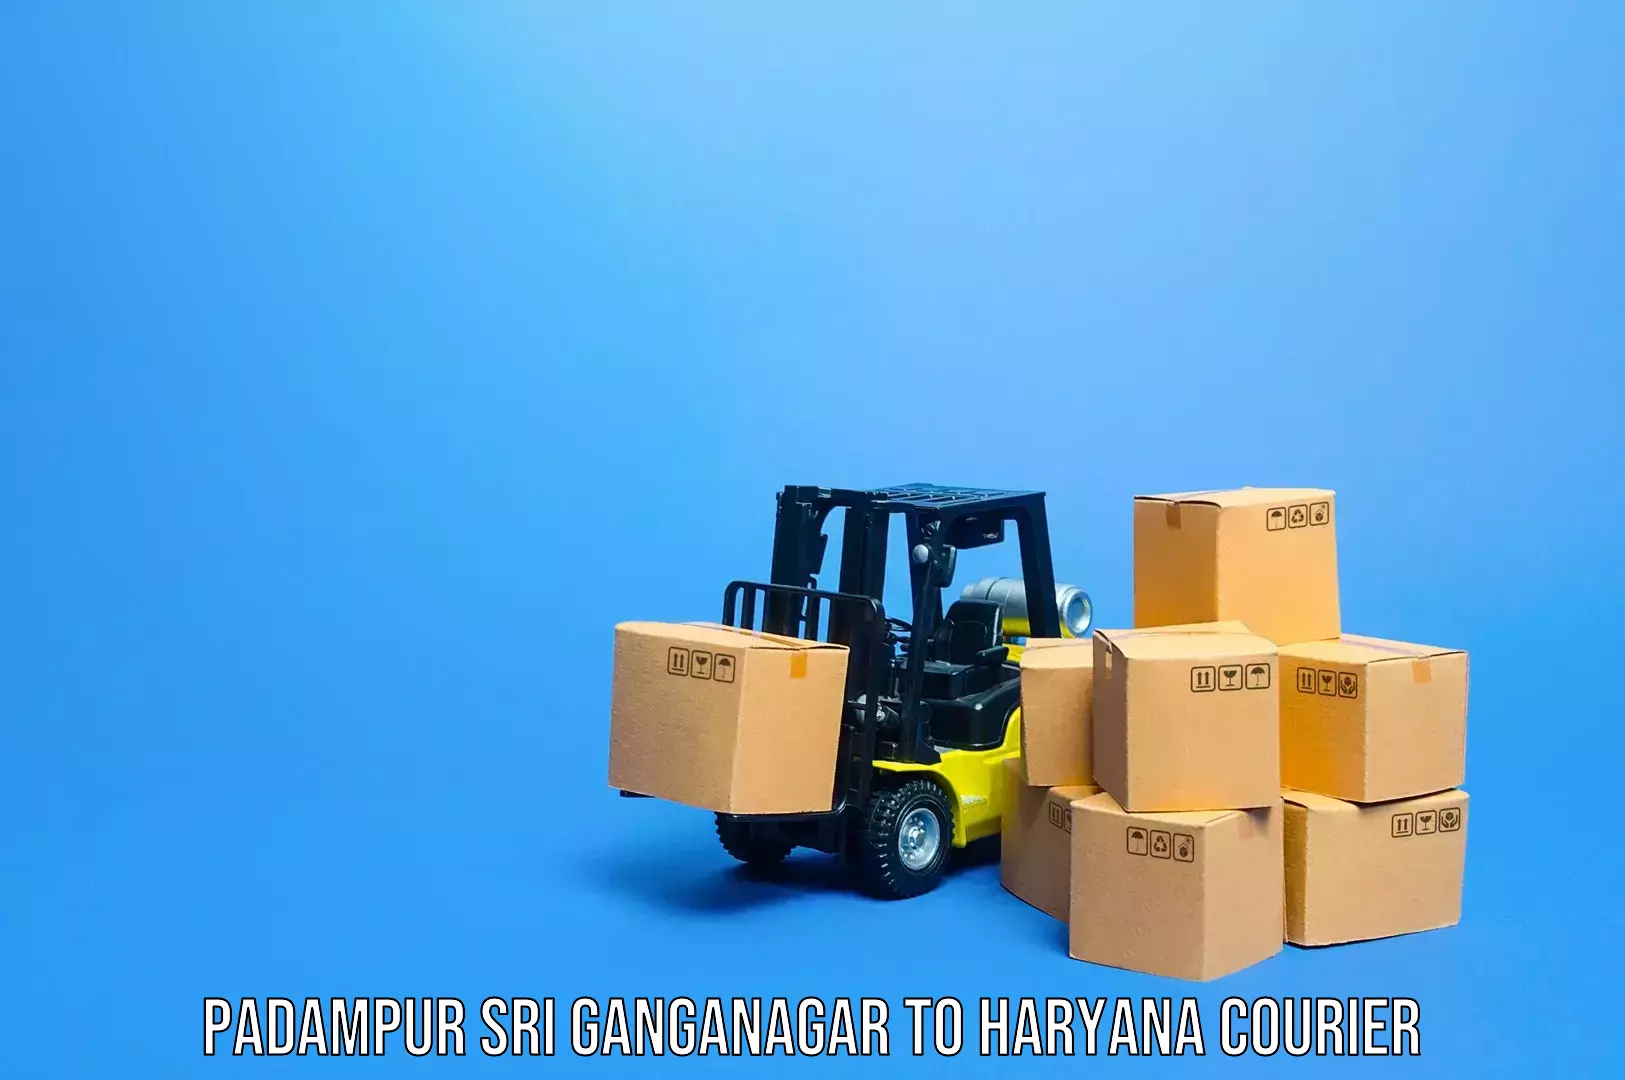 Online luggage shipping booking Padampur Sri Ganganagar to Chaudhary Charan Singh Haryana Agricultural University Hisar